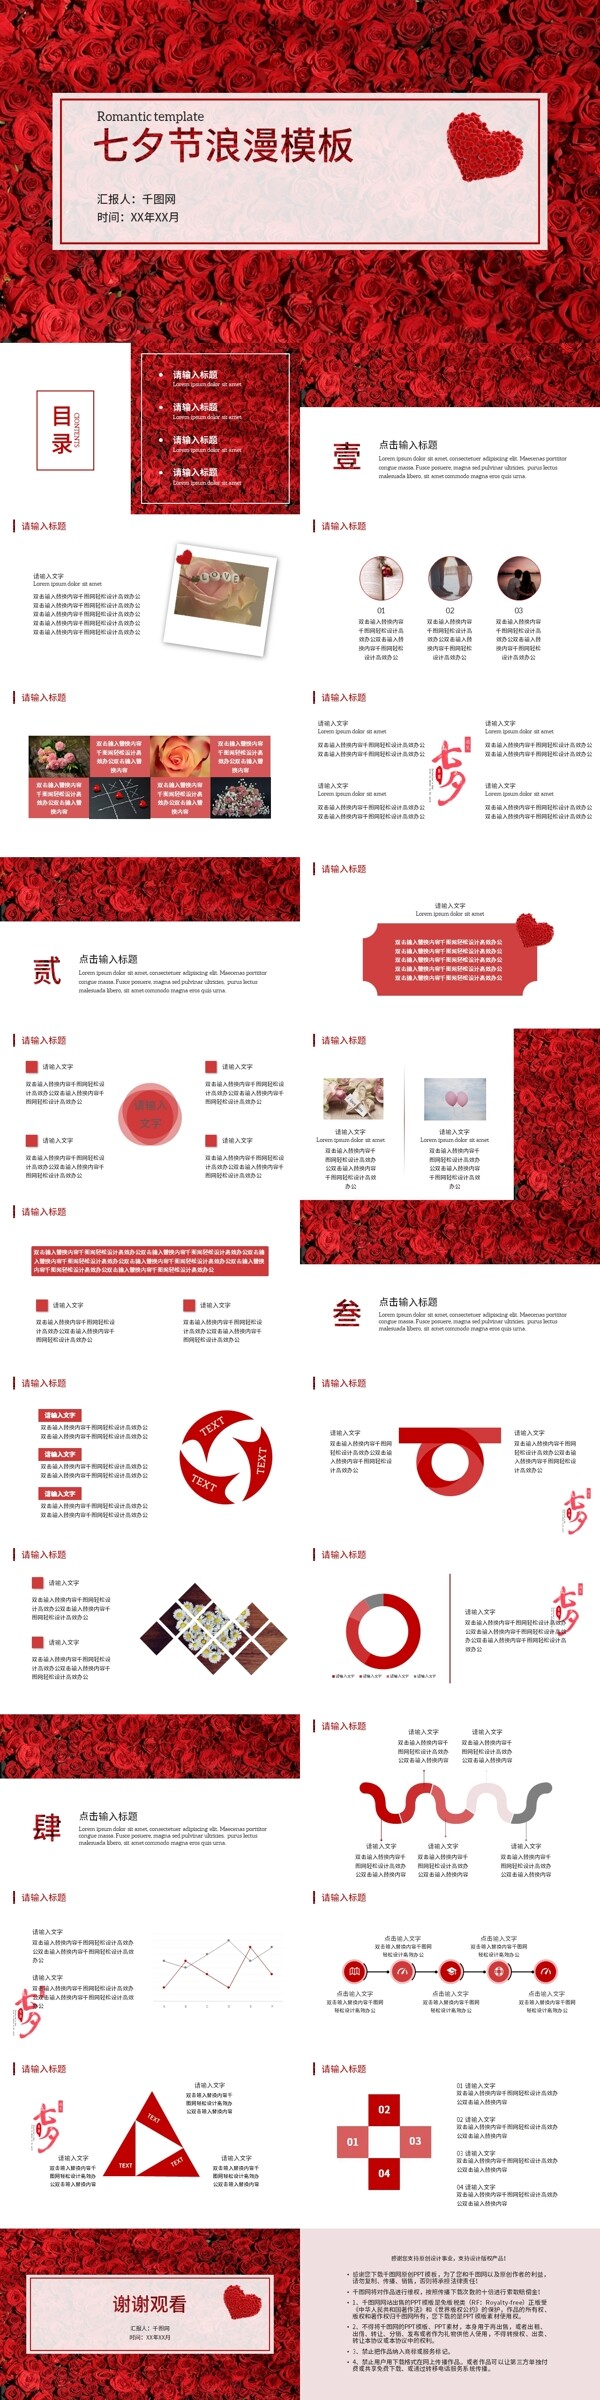 红色浪漫玫瑰七夕节情人节告白纪念日模板